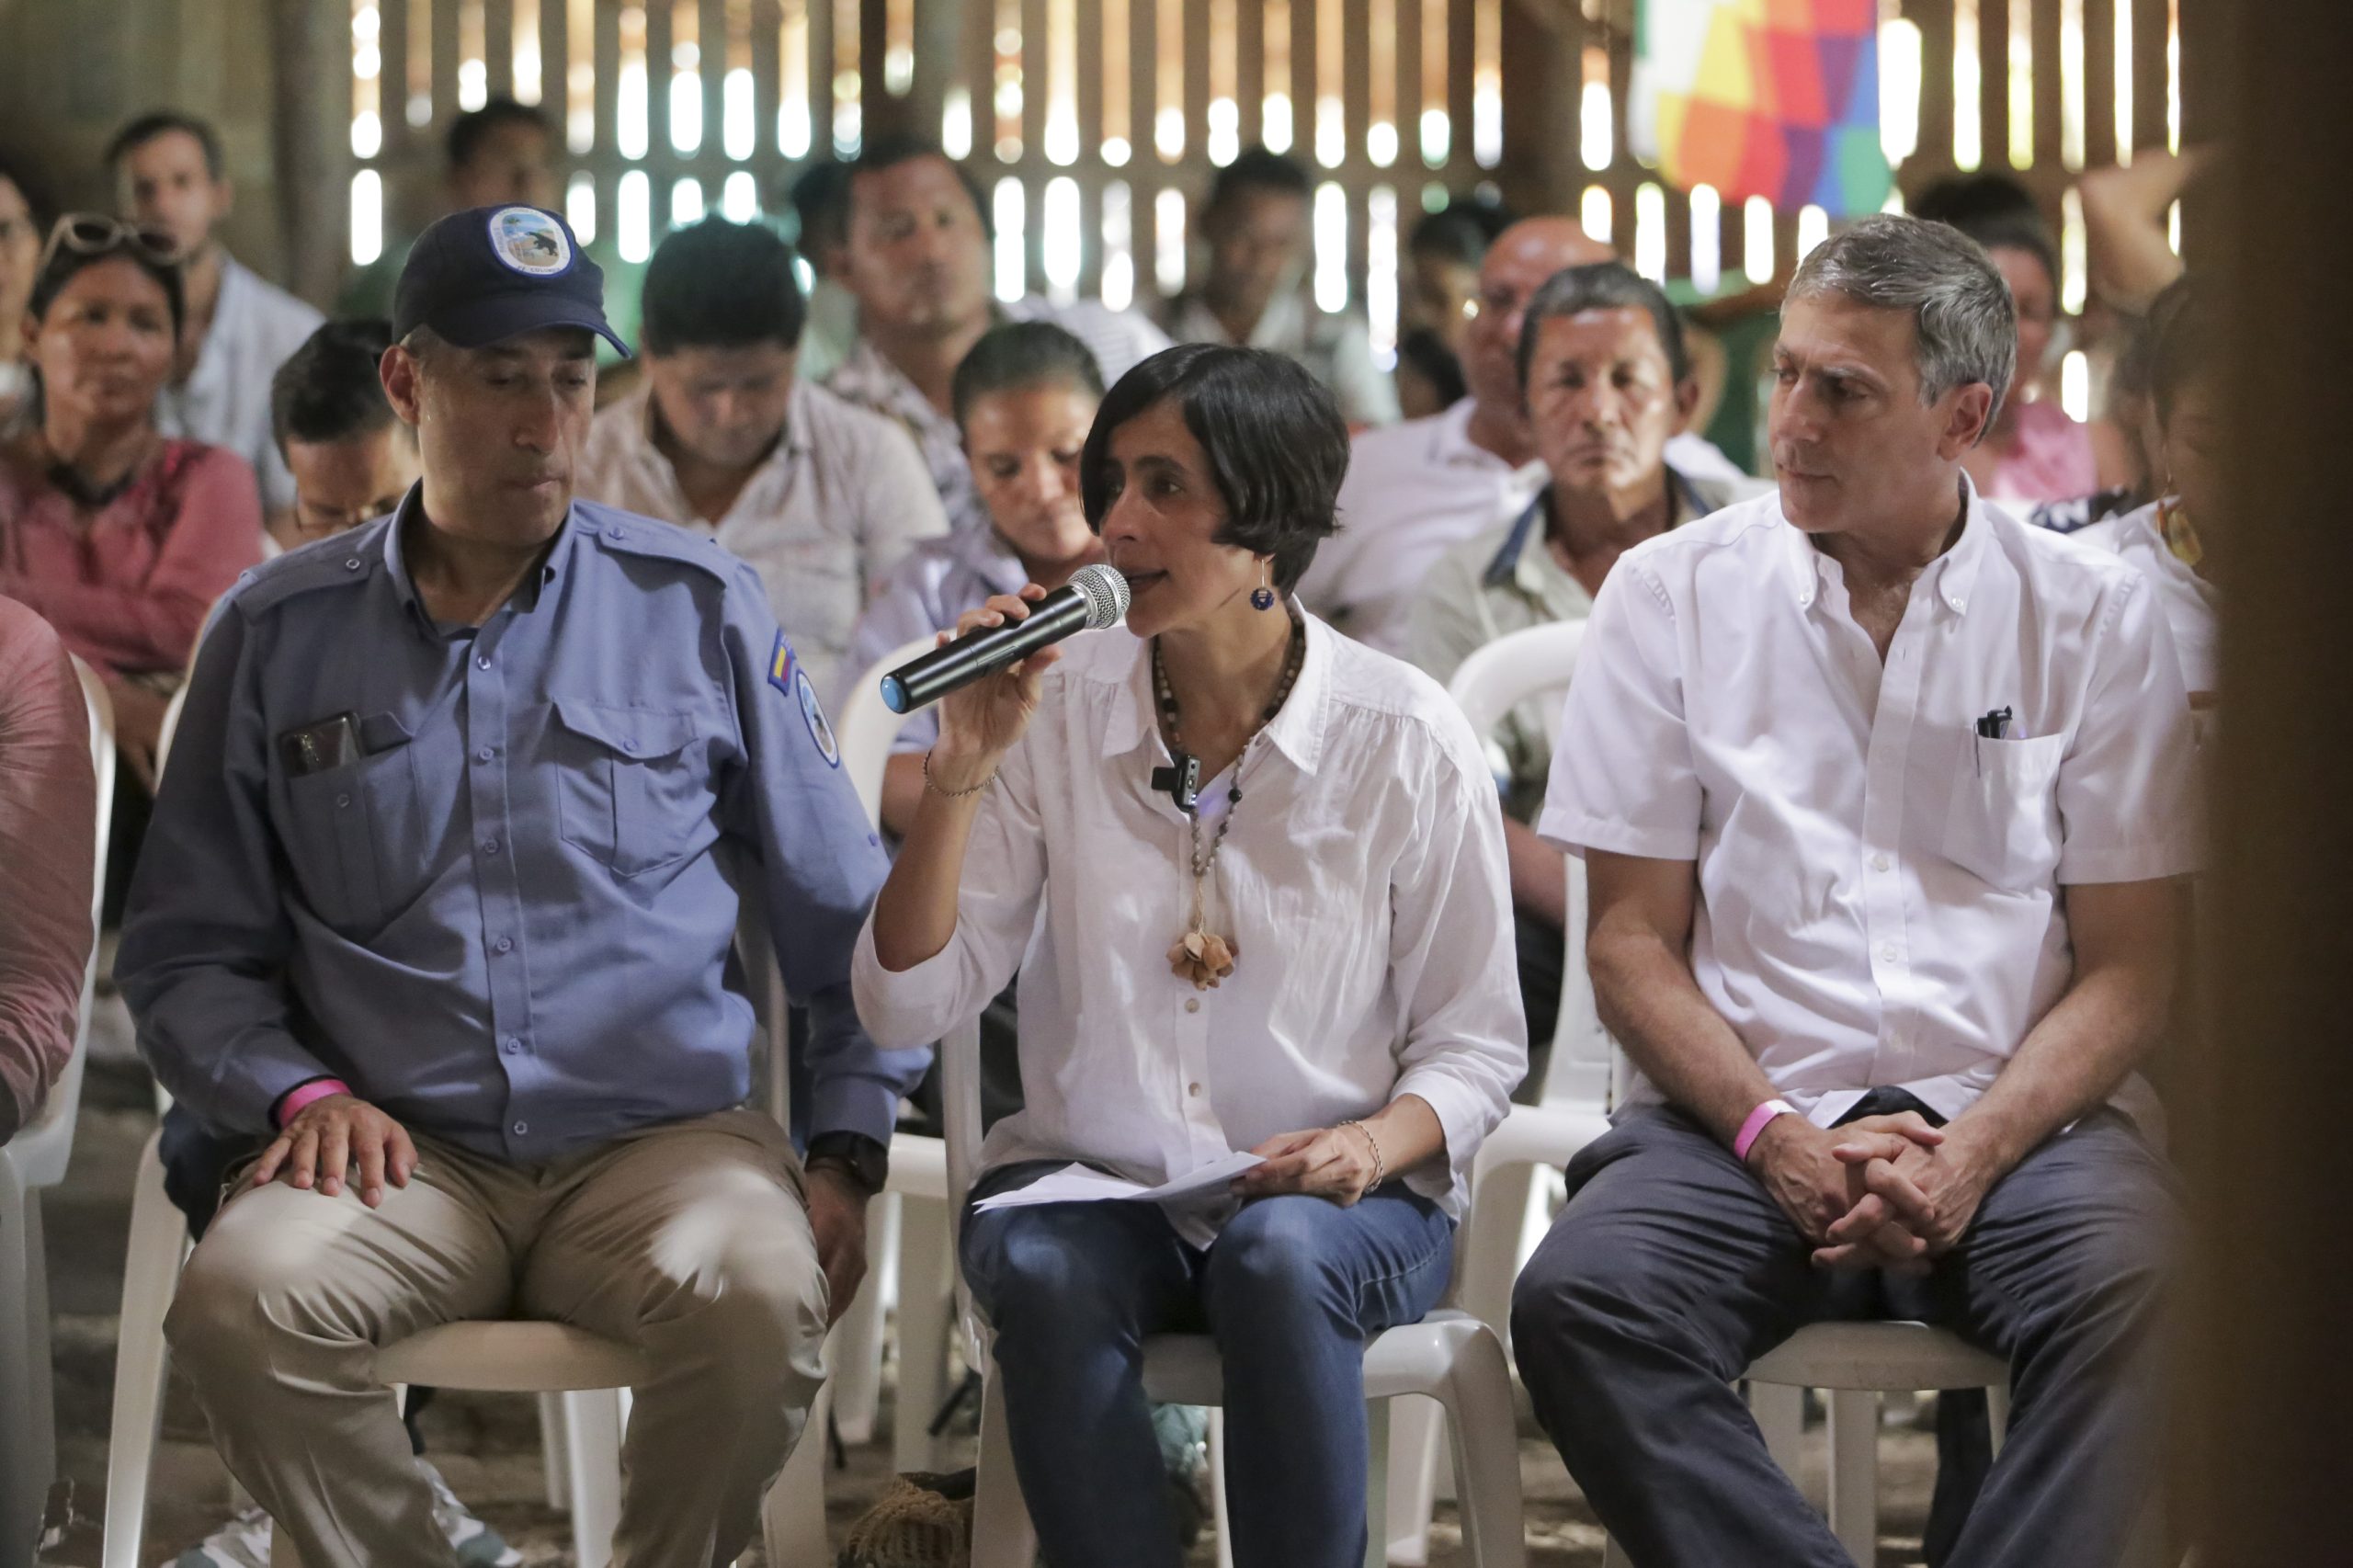 Susana Muhamad com um microfone na mão, sentada em meio a um grupo de pessoas.